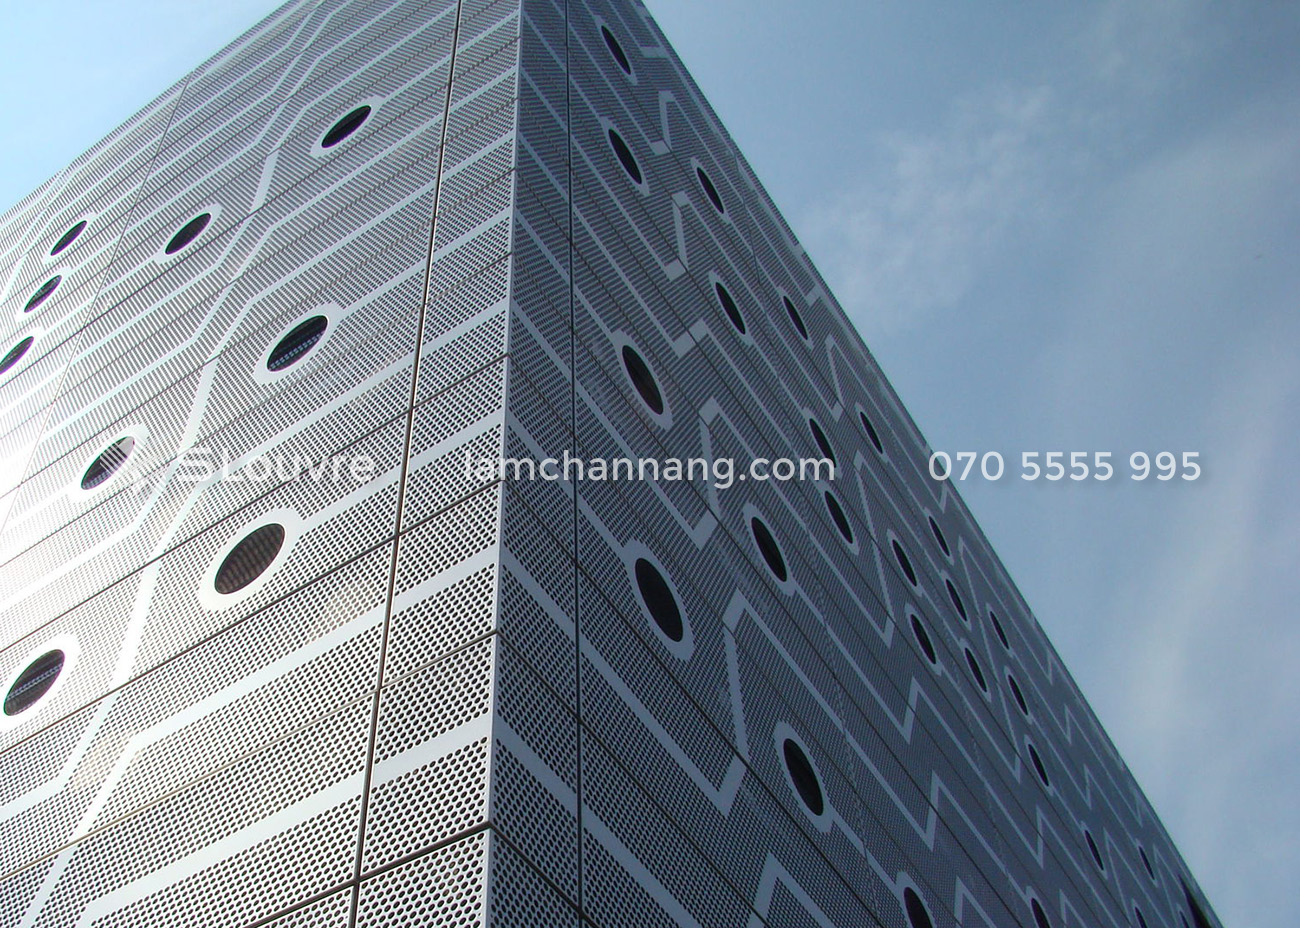 tam-nhom-duc-lo-Perforated-aluminium-panel-1.jpg